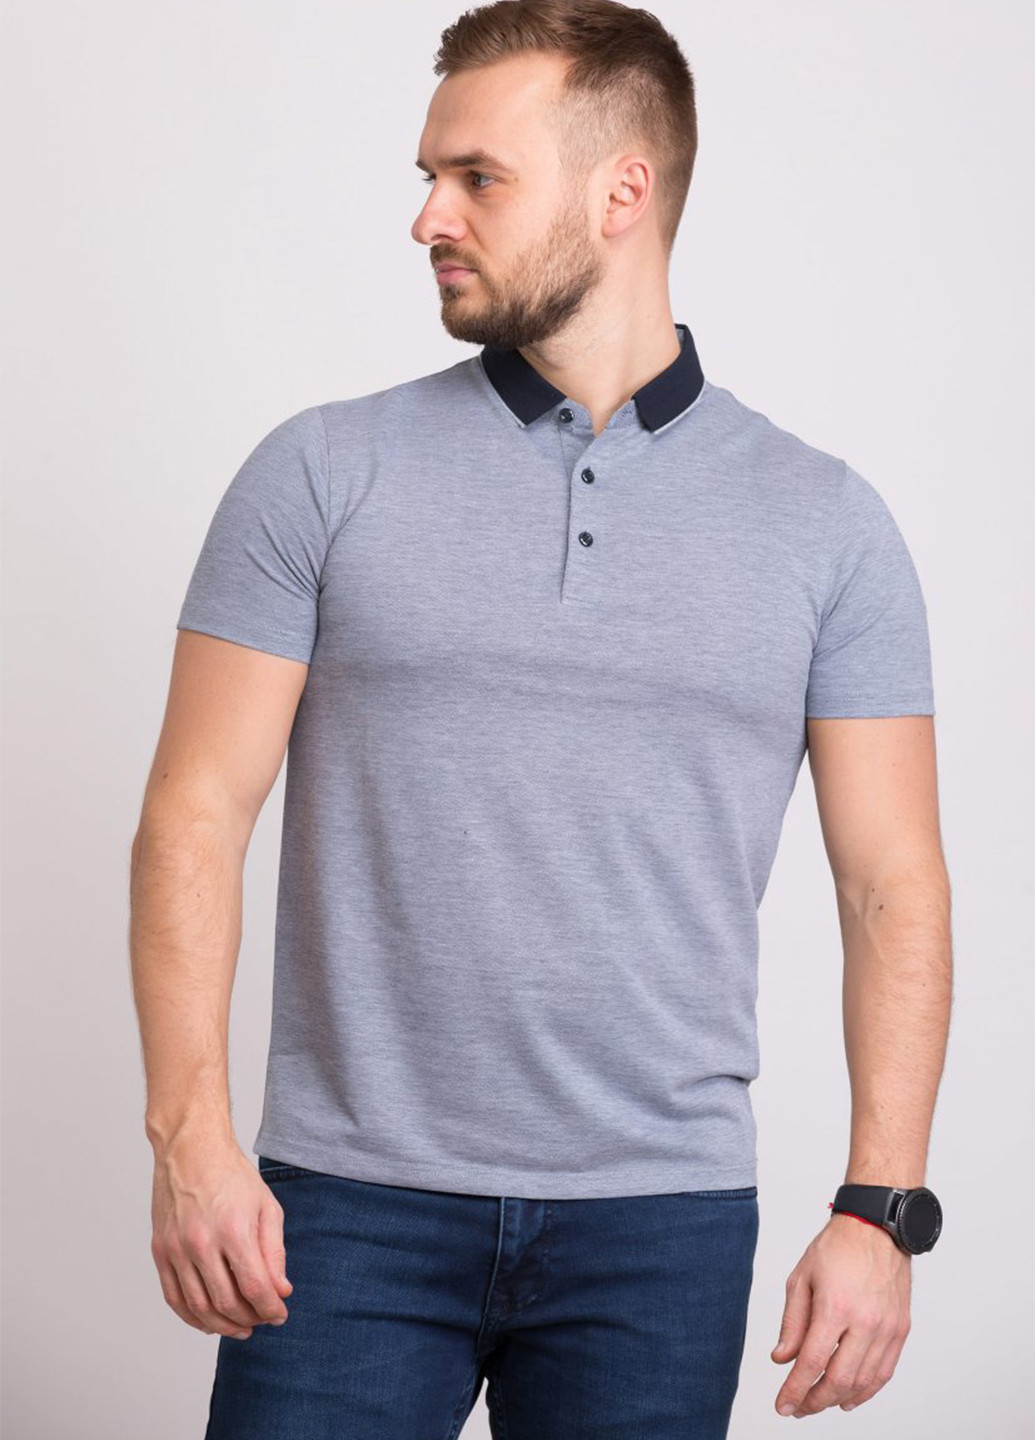 Серая футболка-поло для мужчин Trend Collection меланжевая